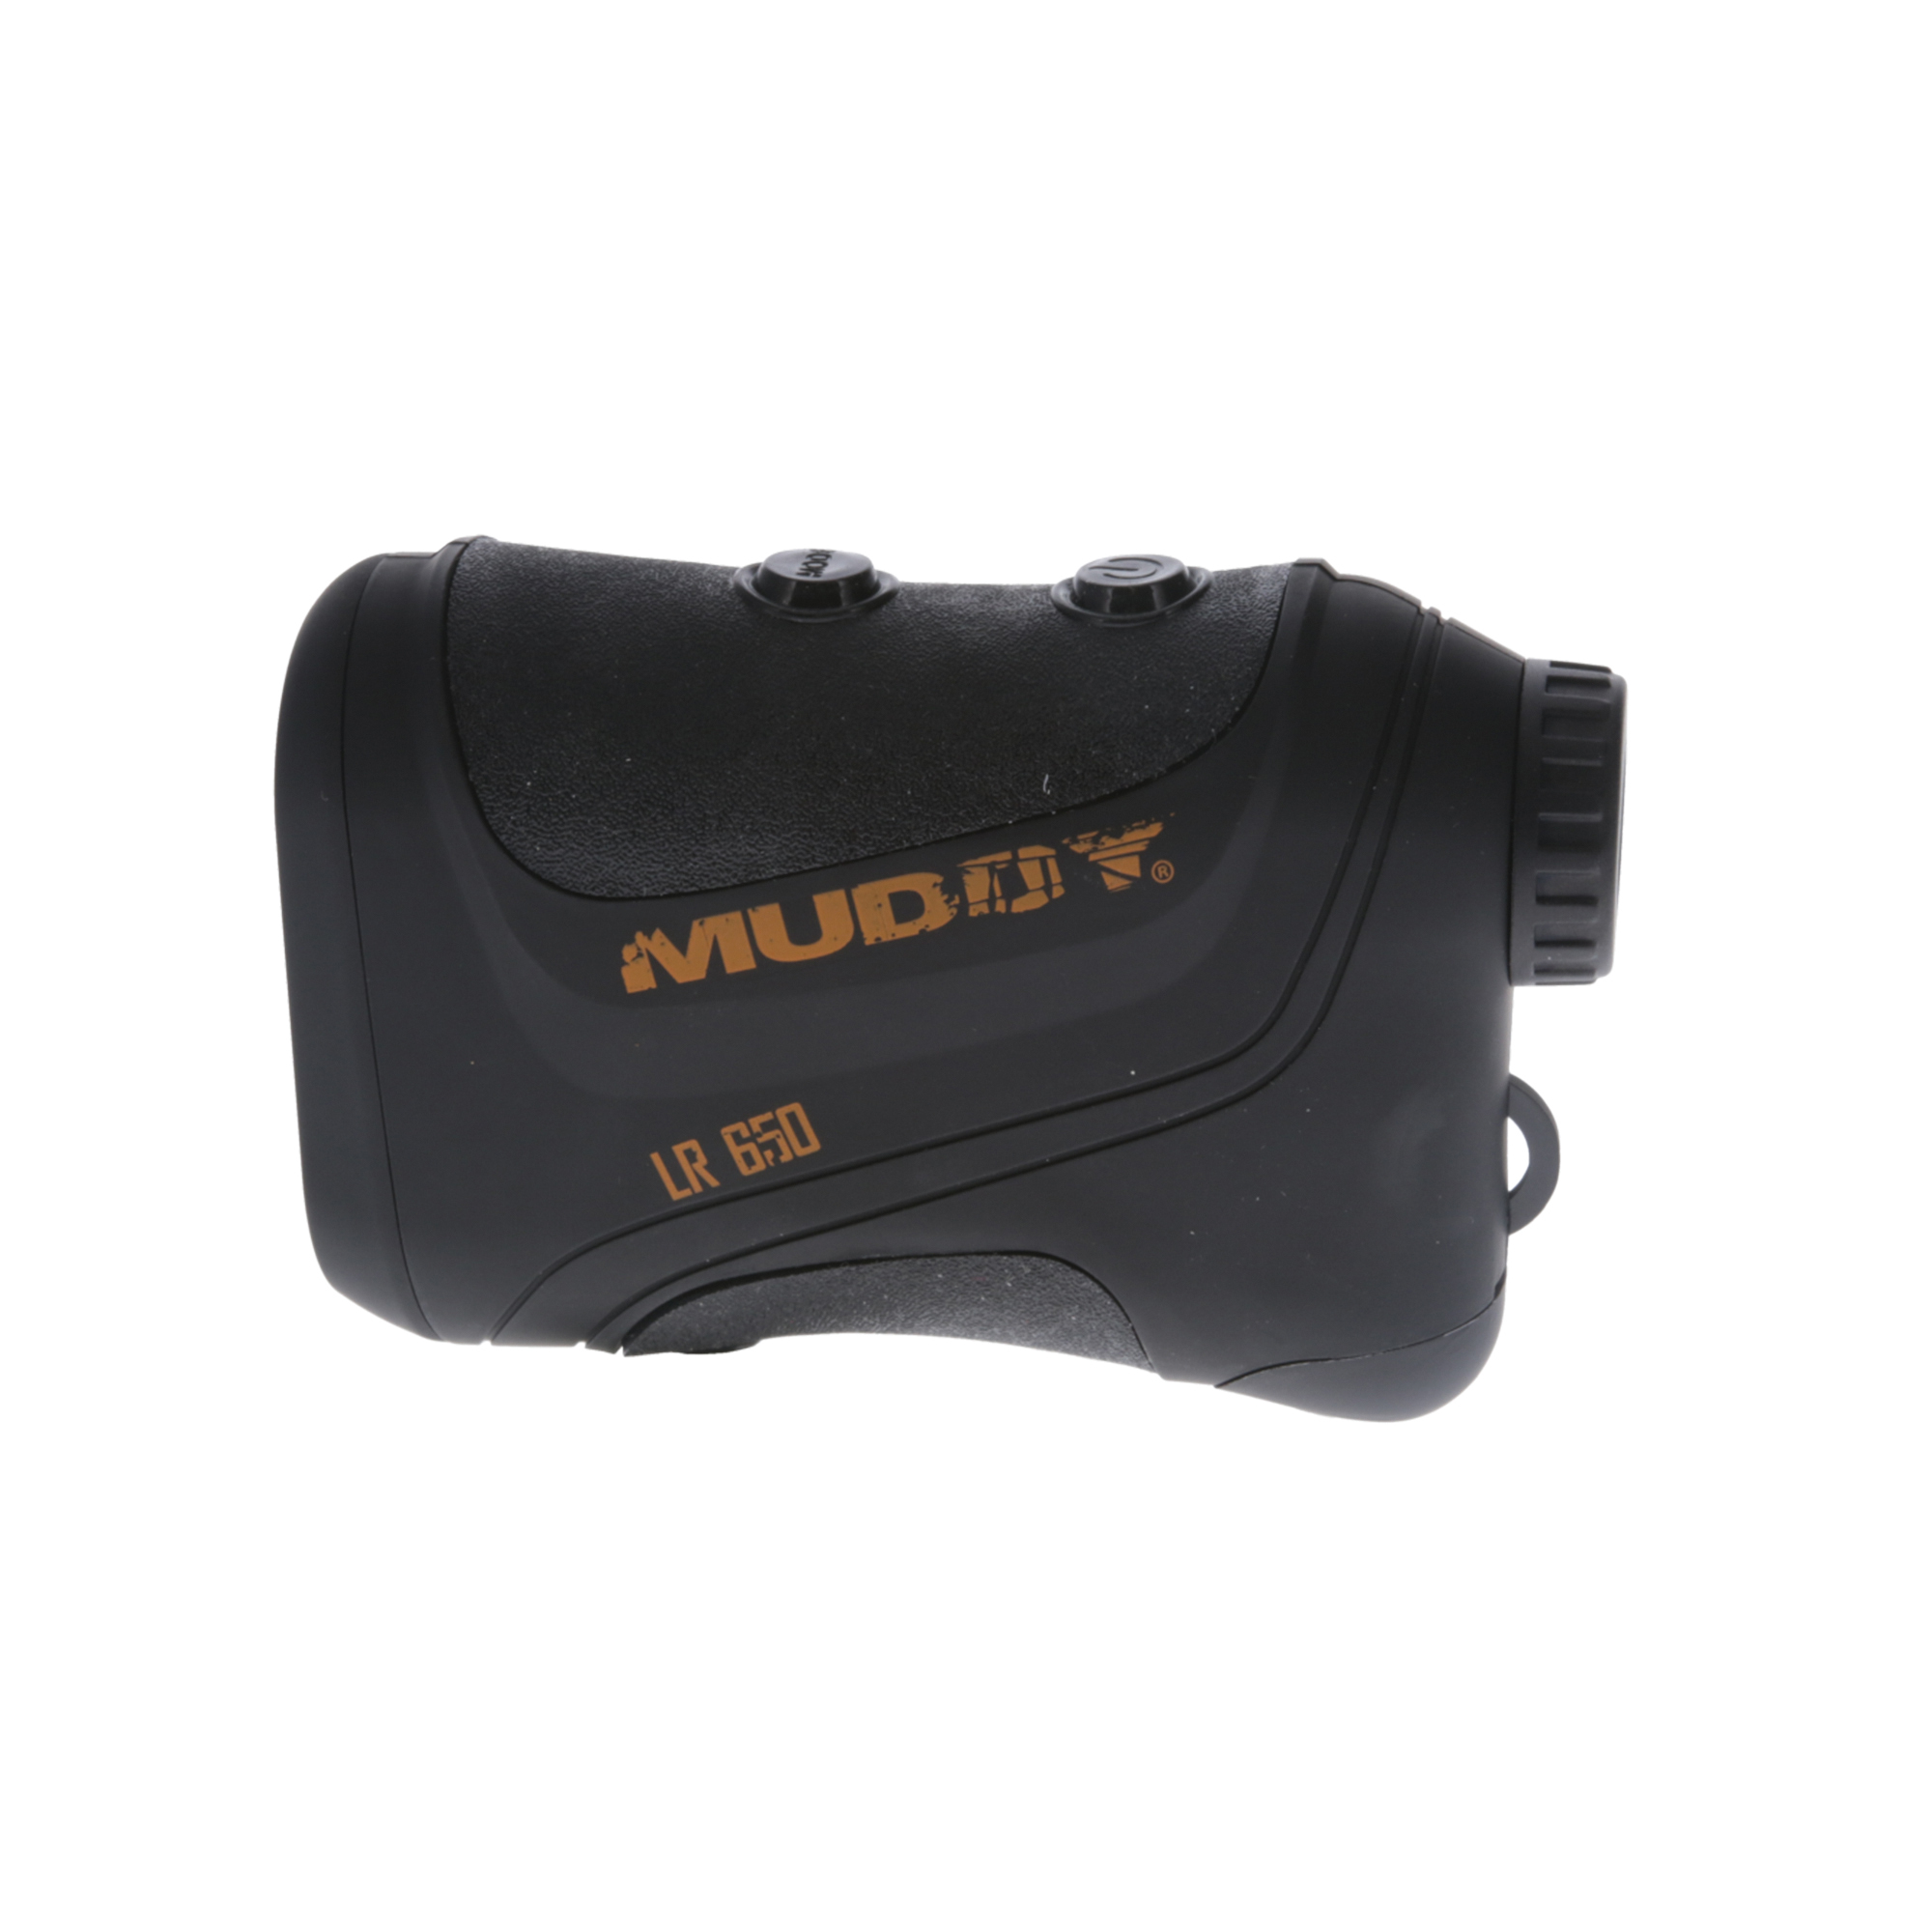 Muddy, 650 Laser Range Finder, Color Beige, Material Plastic, Model MUD-LR650